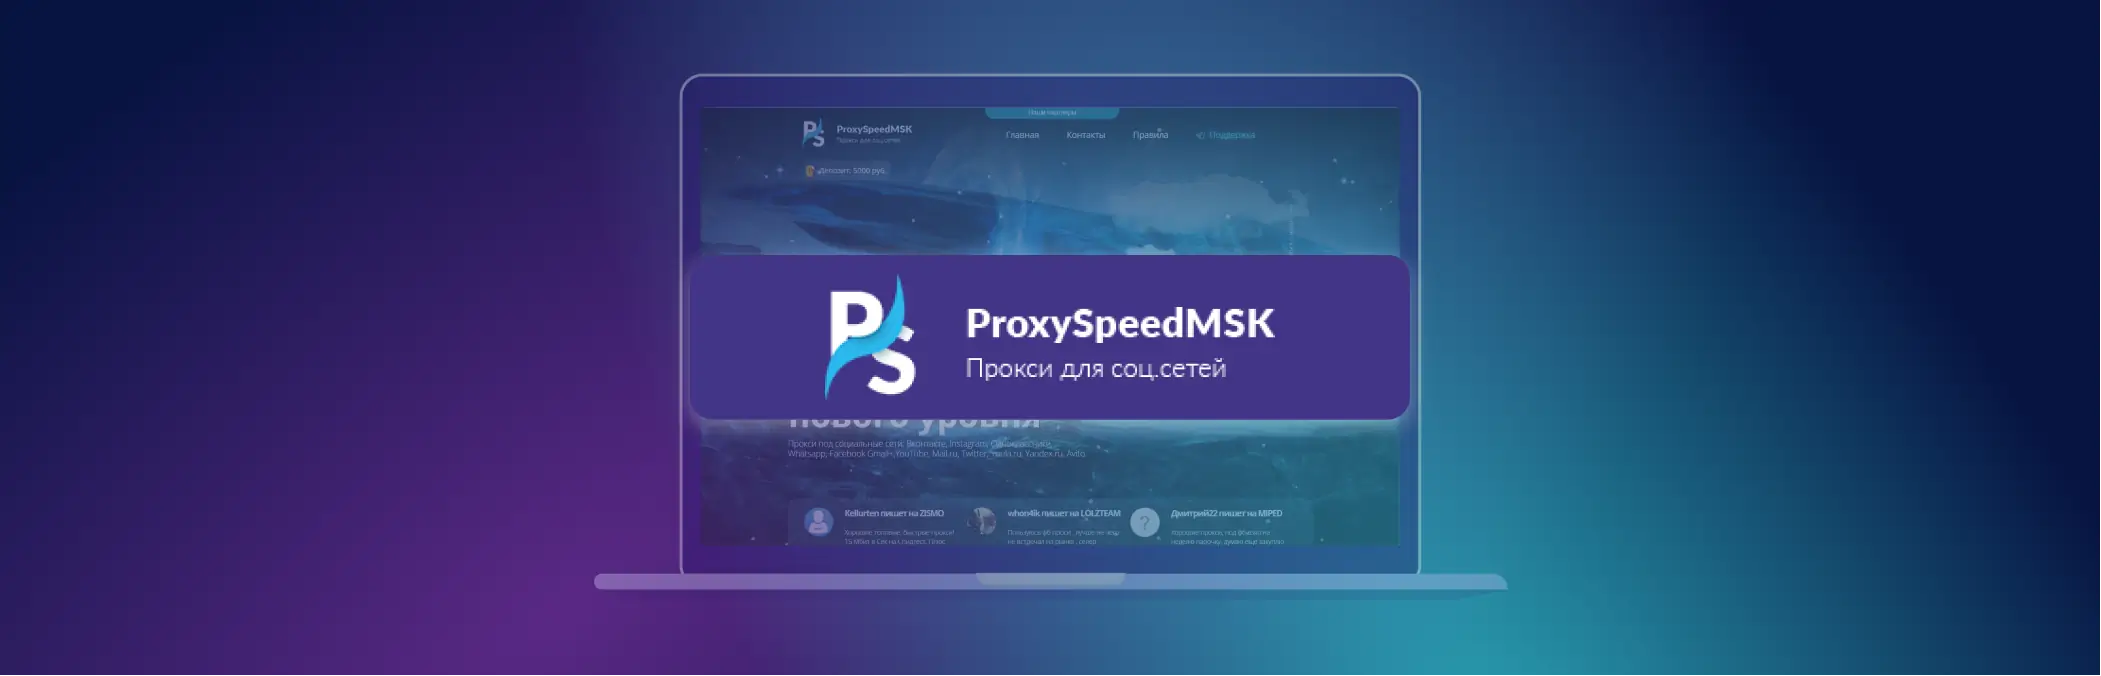 移动代理：优势、类型和购买地点 - ProxySpeedMSK